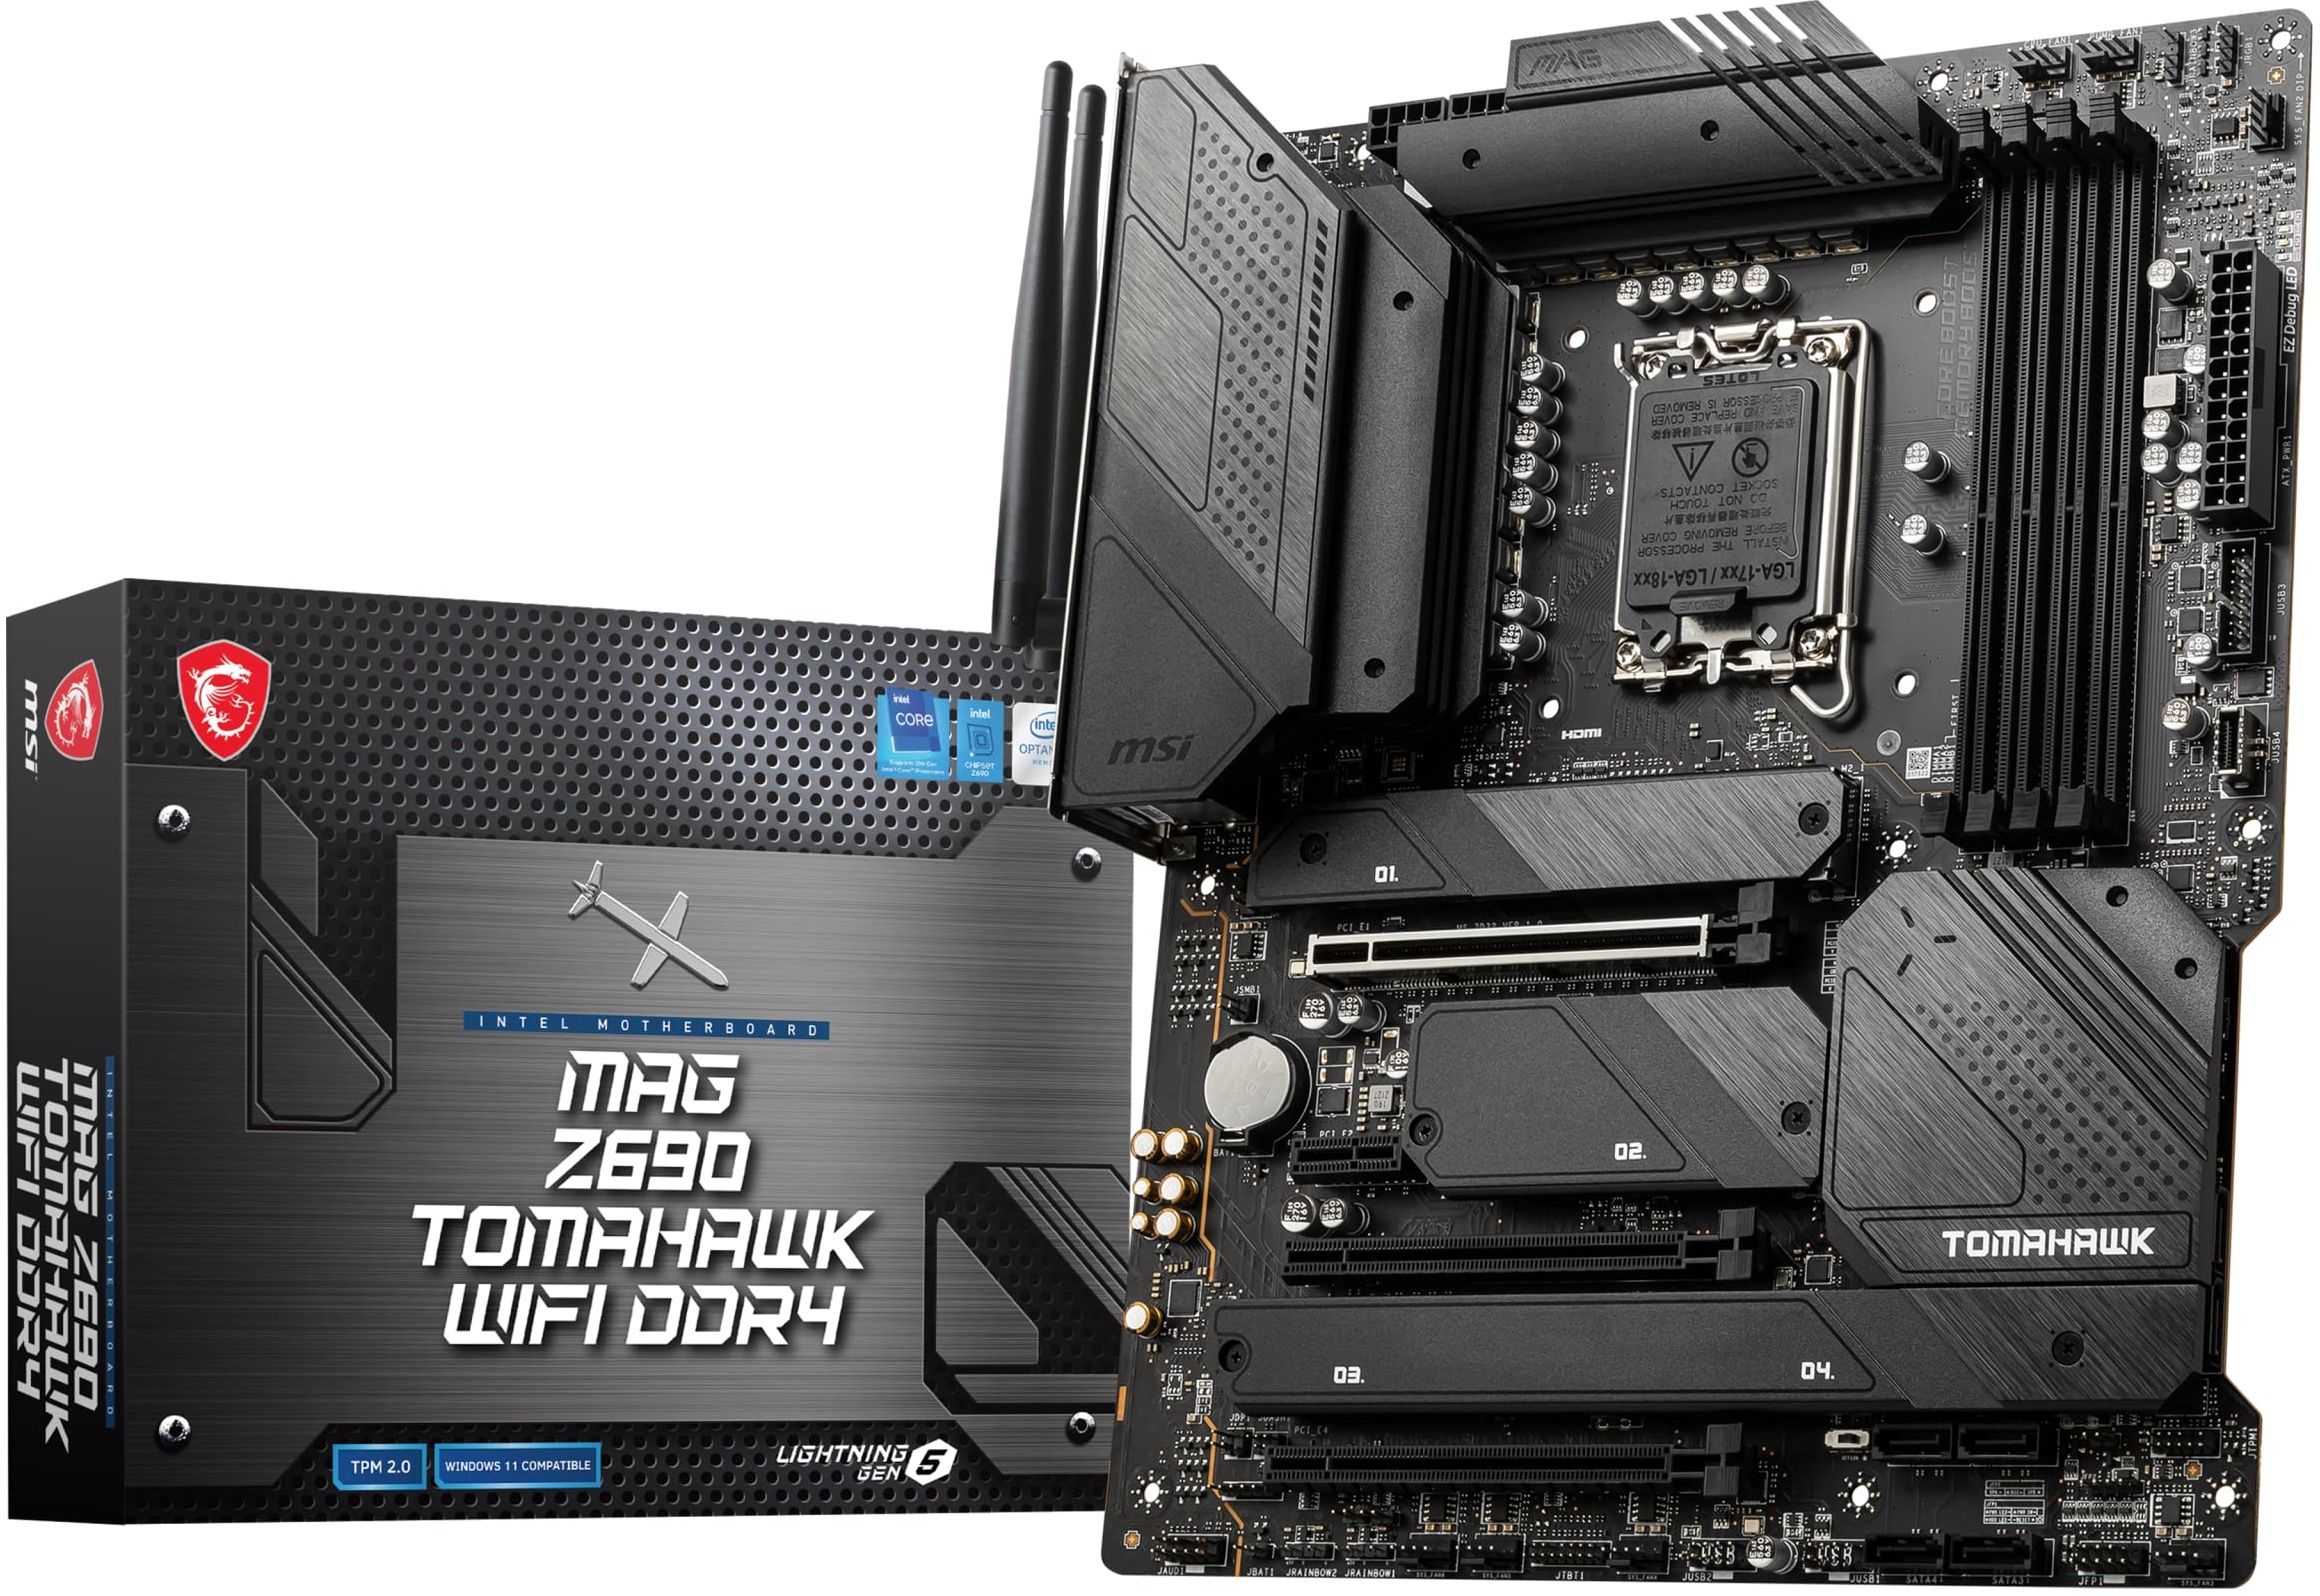 MSI MAG Z690 TOMAHAWK WIFI DDR4 Gaming Mainboard ATX, unterstützt Intel Core Prozessoren 12. Generation, LGA 1700,16 Duet Rail VRM 70A, Memory Boost 5200MHz/OC, 1 x PCIe 5.0 x16, 3 x M.2 Gen4, Wi-Fi 6